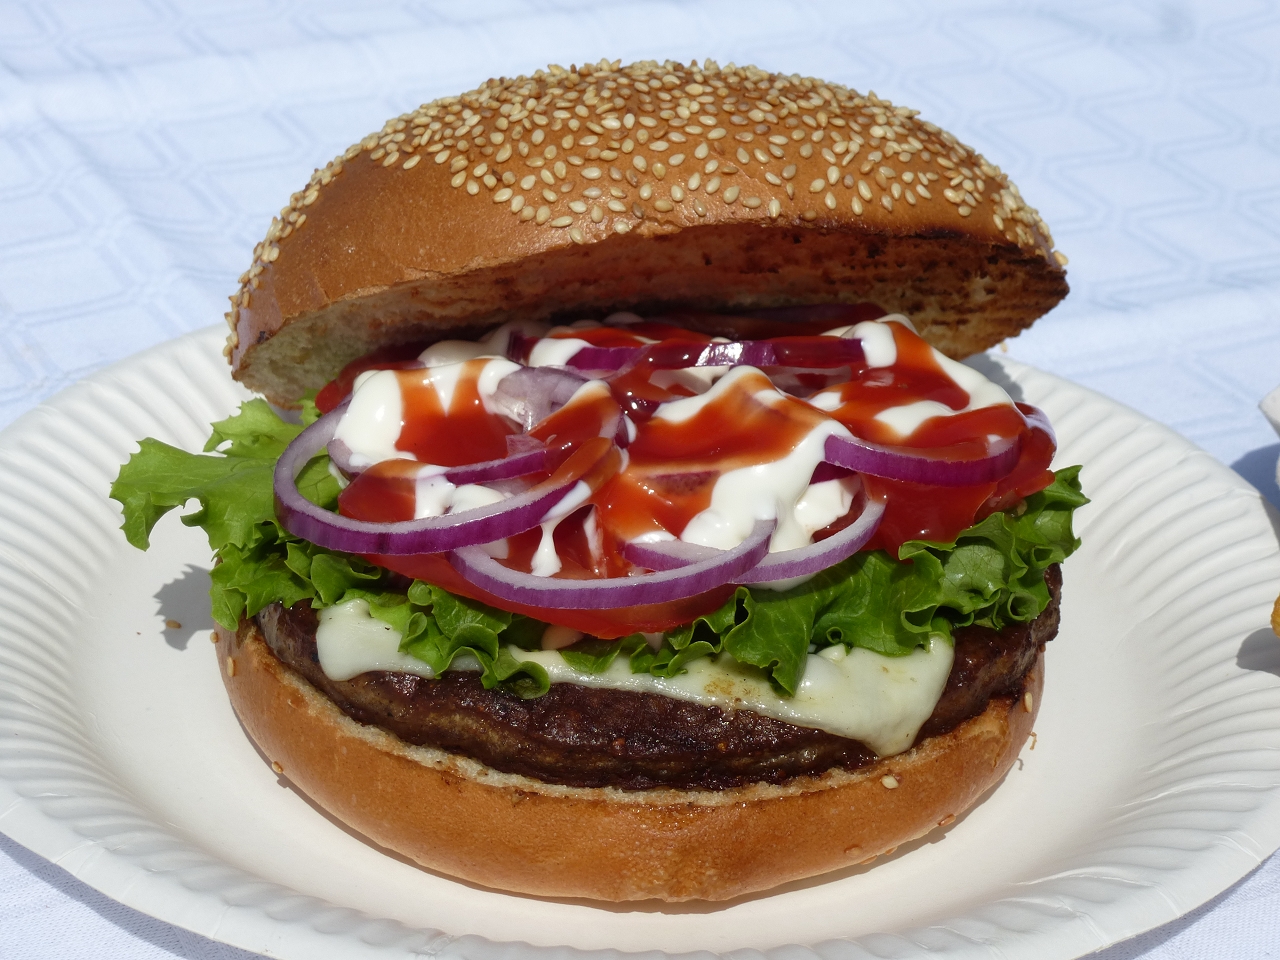 Riesenburger von der GrillBar, Streetfood der feinsten Art!